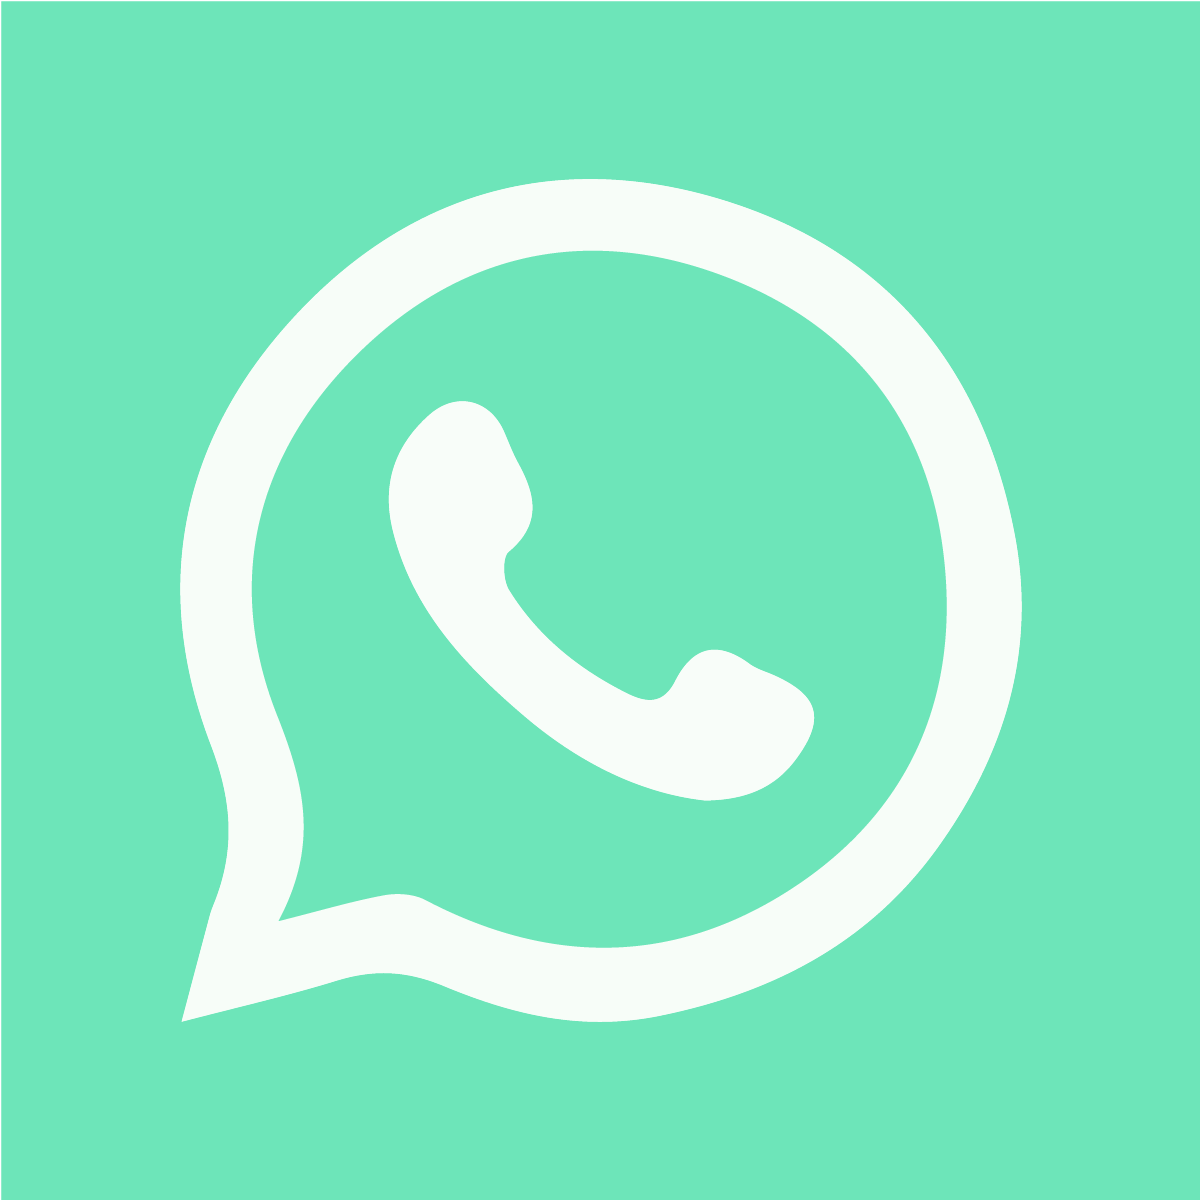 Easy Whatsapp Chat